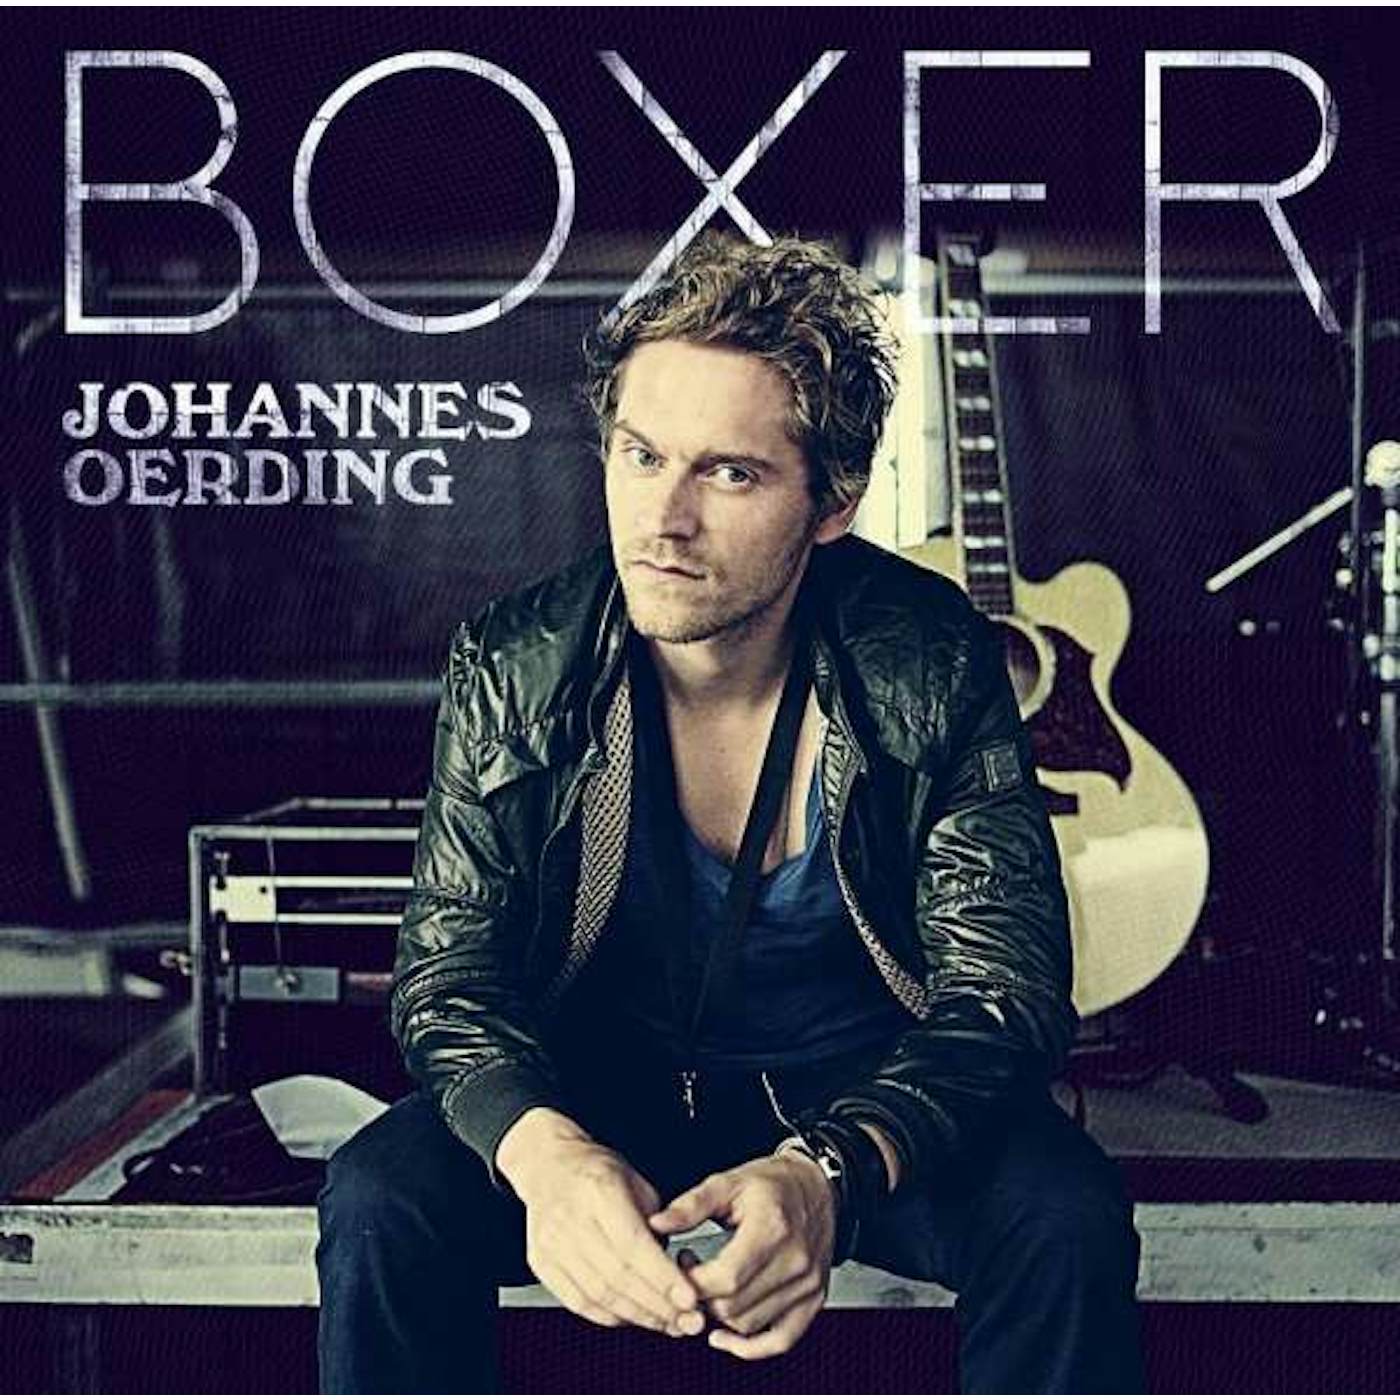 Johannes Oerding Boxer Vinyl Record